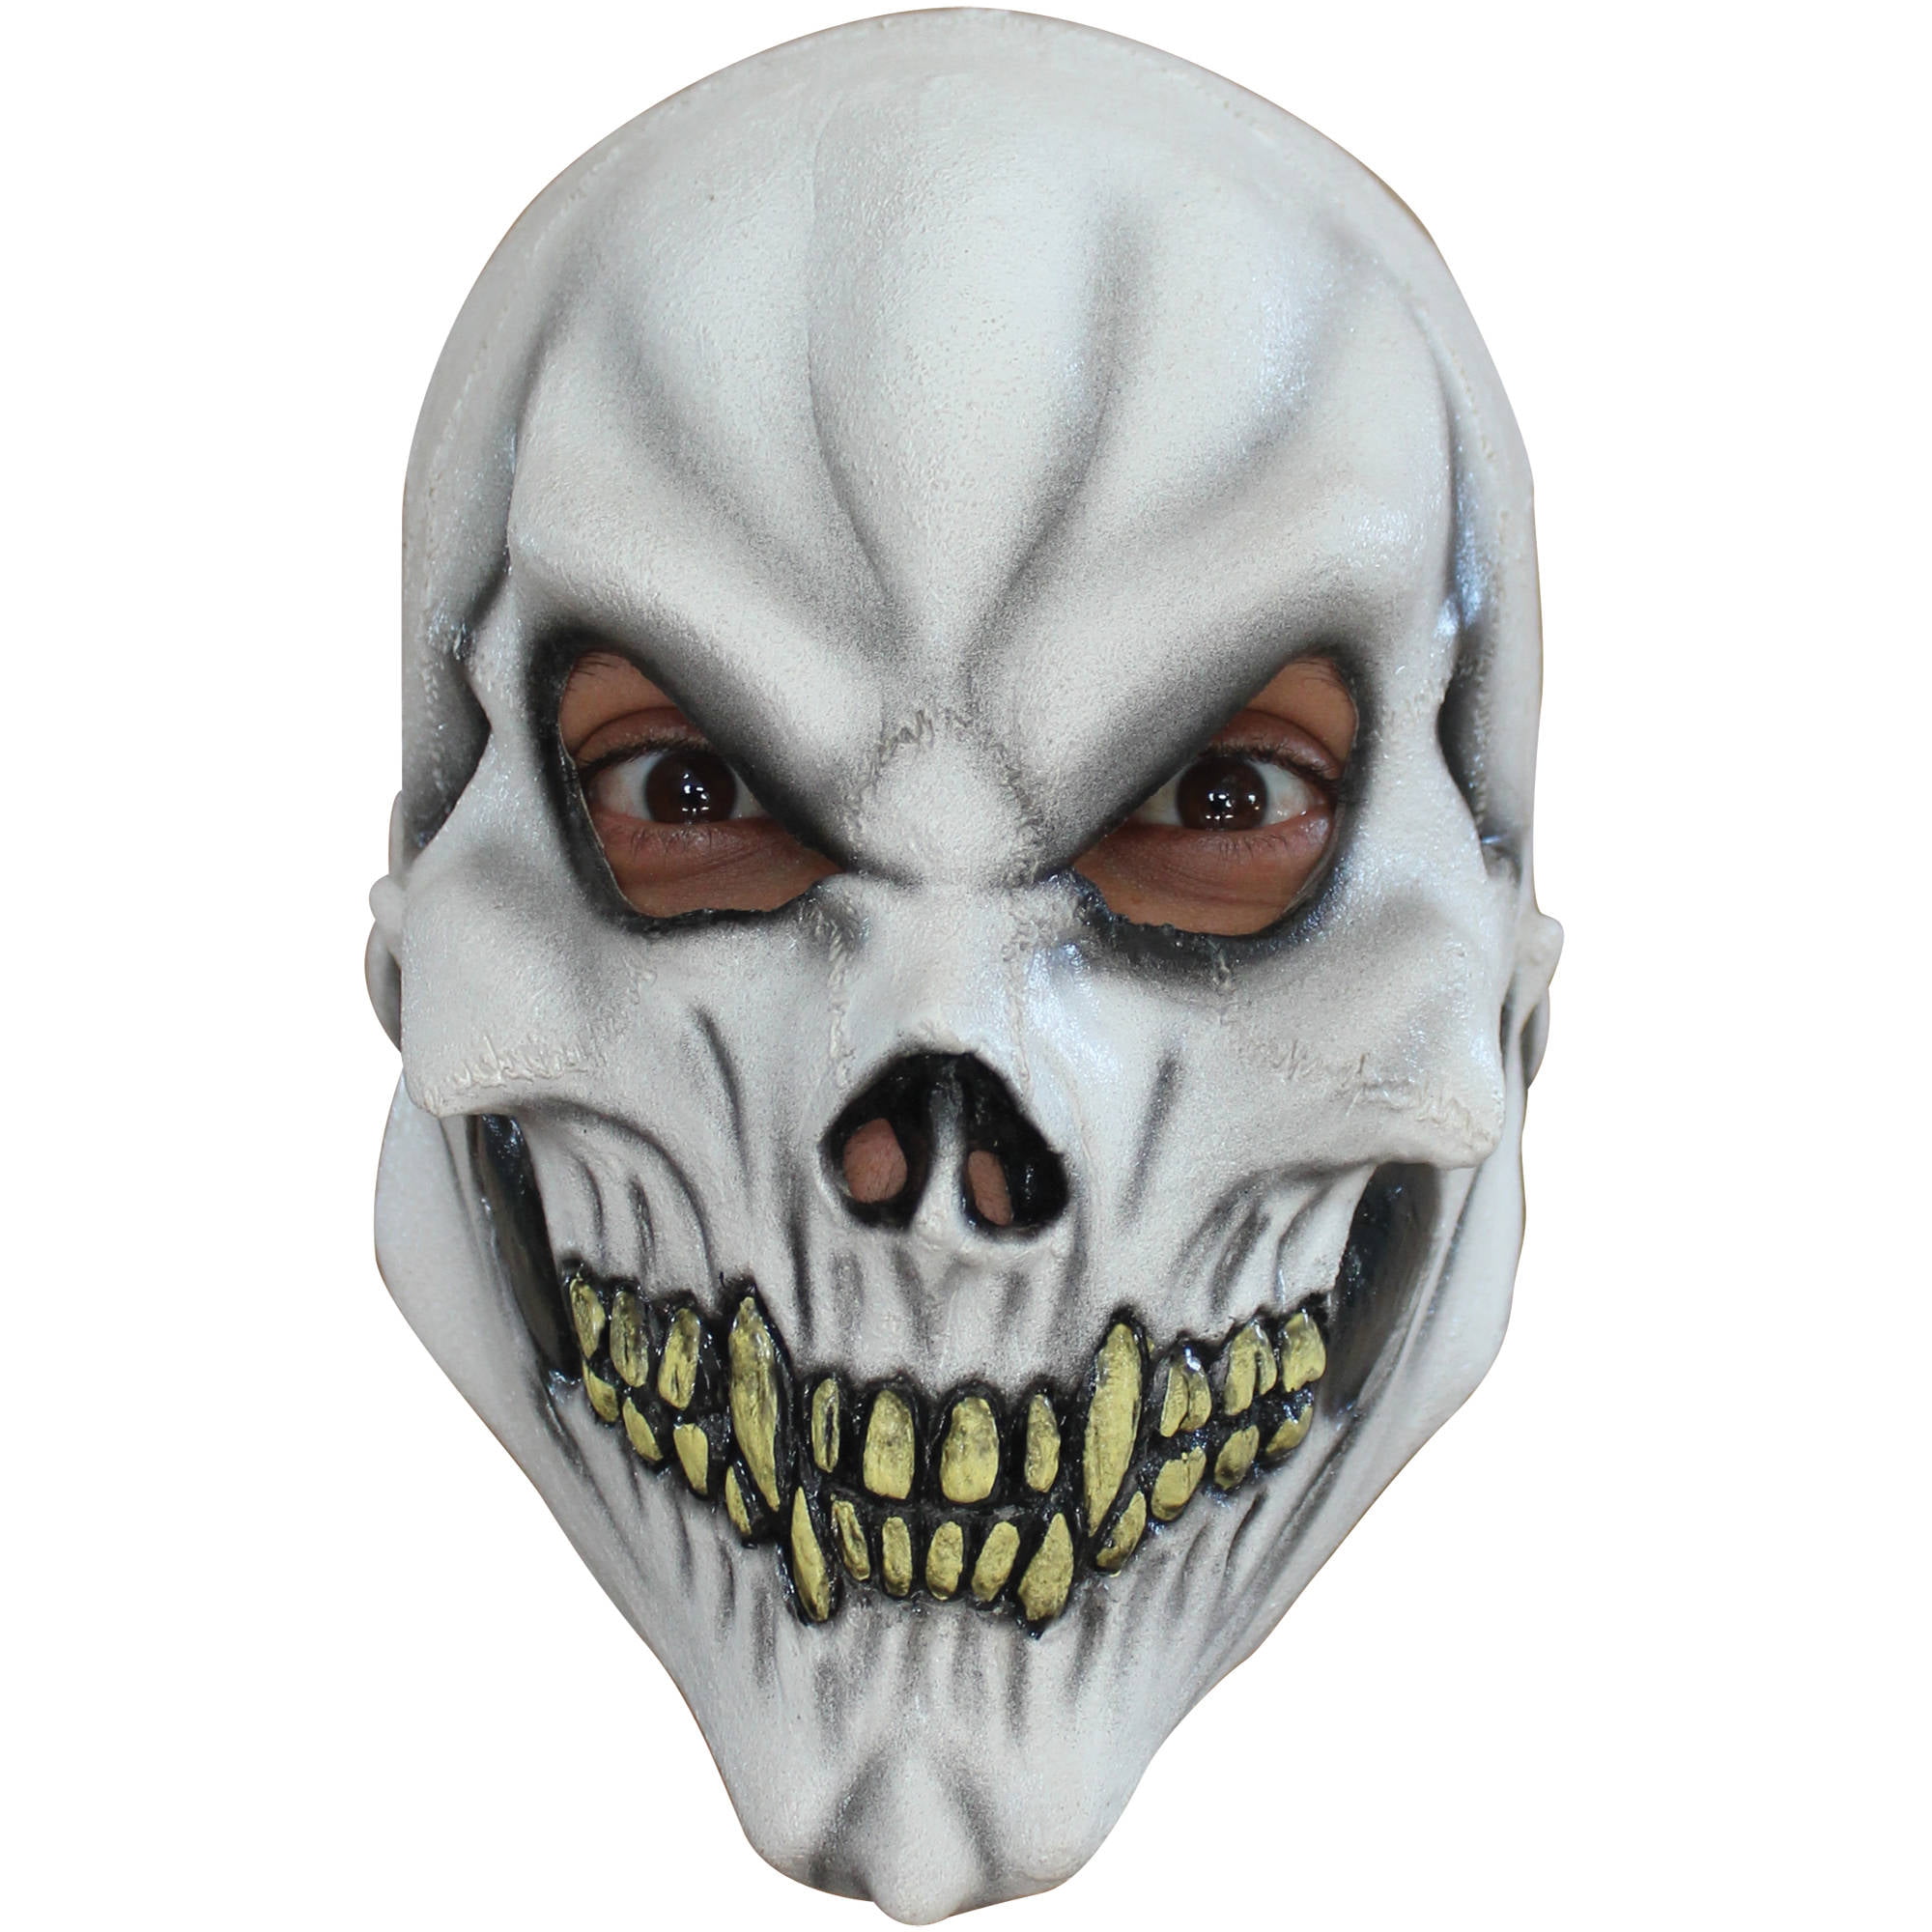 Childs Skeleton Deluxe Quality Latex Skull Mask 